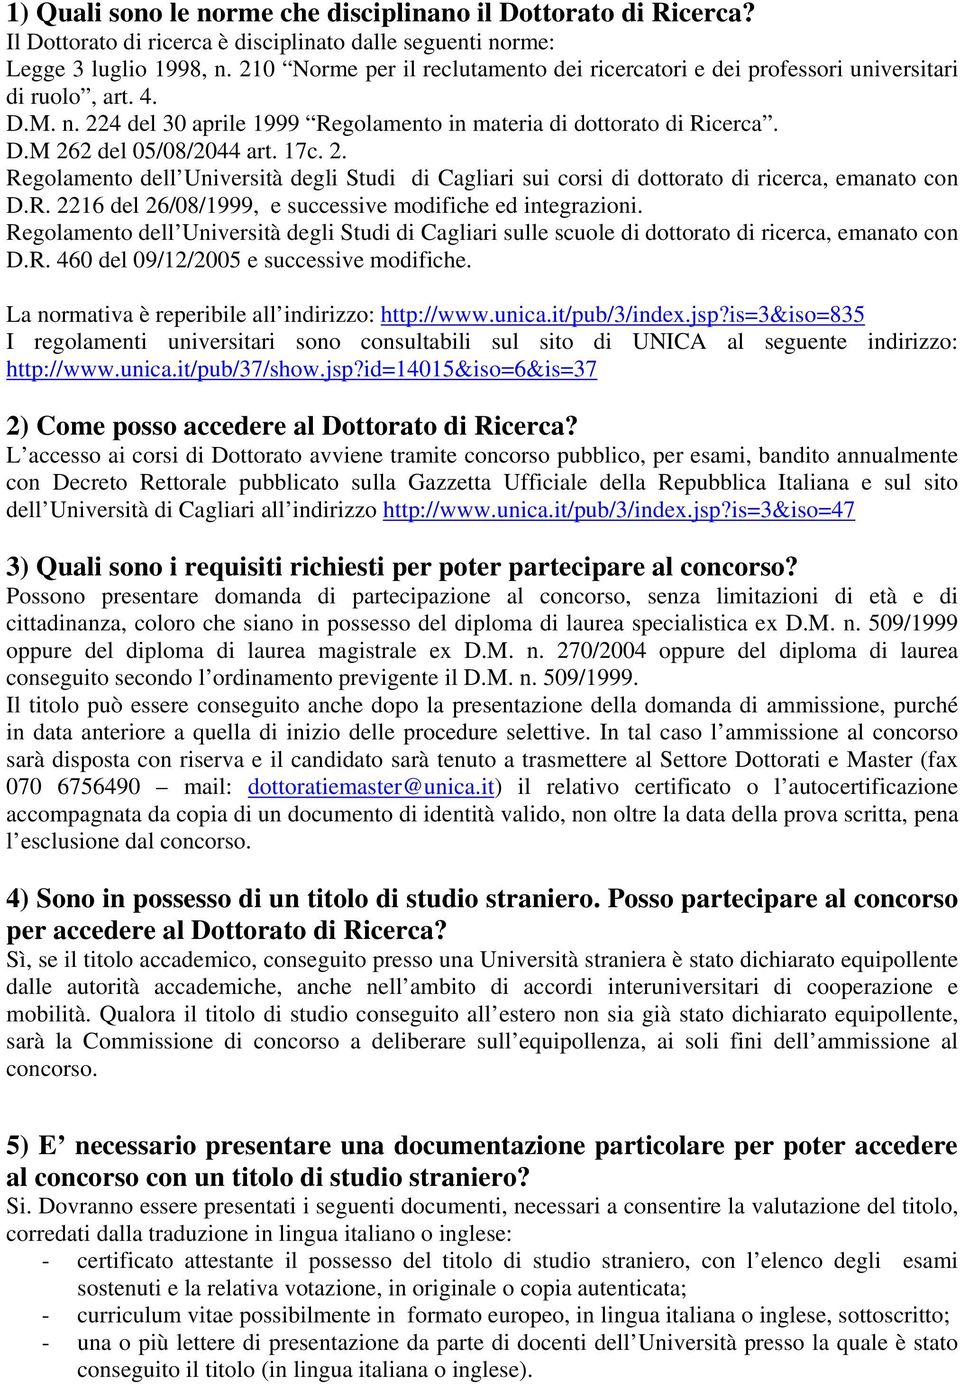 17c. 2. Regolamento dell Università degli Studi di Cagliari sui corsi di dottorato di ricerca, emanato con D.R. 2216 del 26/08/1999, e successive modifiche ed integrazioni.